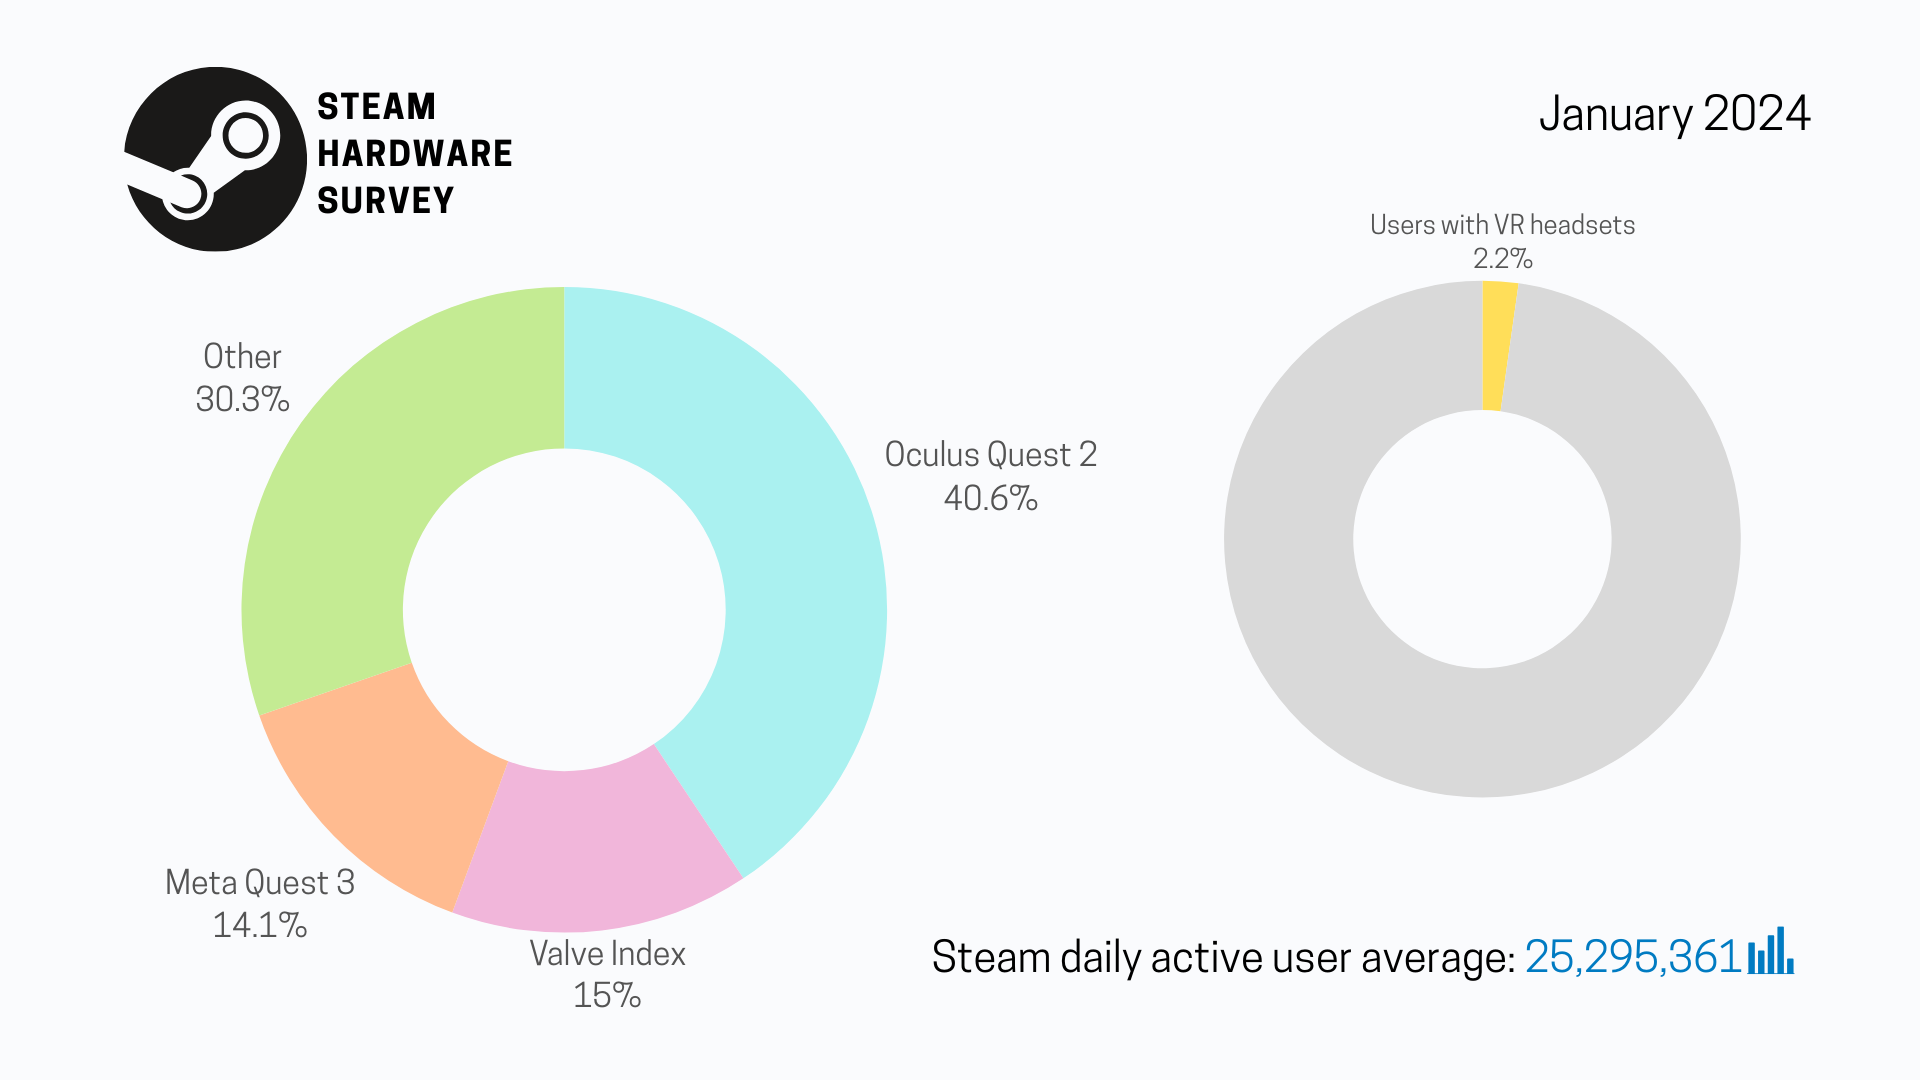 Gráficos circulares que muestran la popularidad relativa de diferentes cascos de realidad virtual y el número total de personas con unos cascos junto al recuento de usuarios activos diarios de Steam.